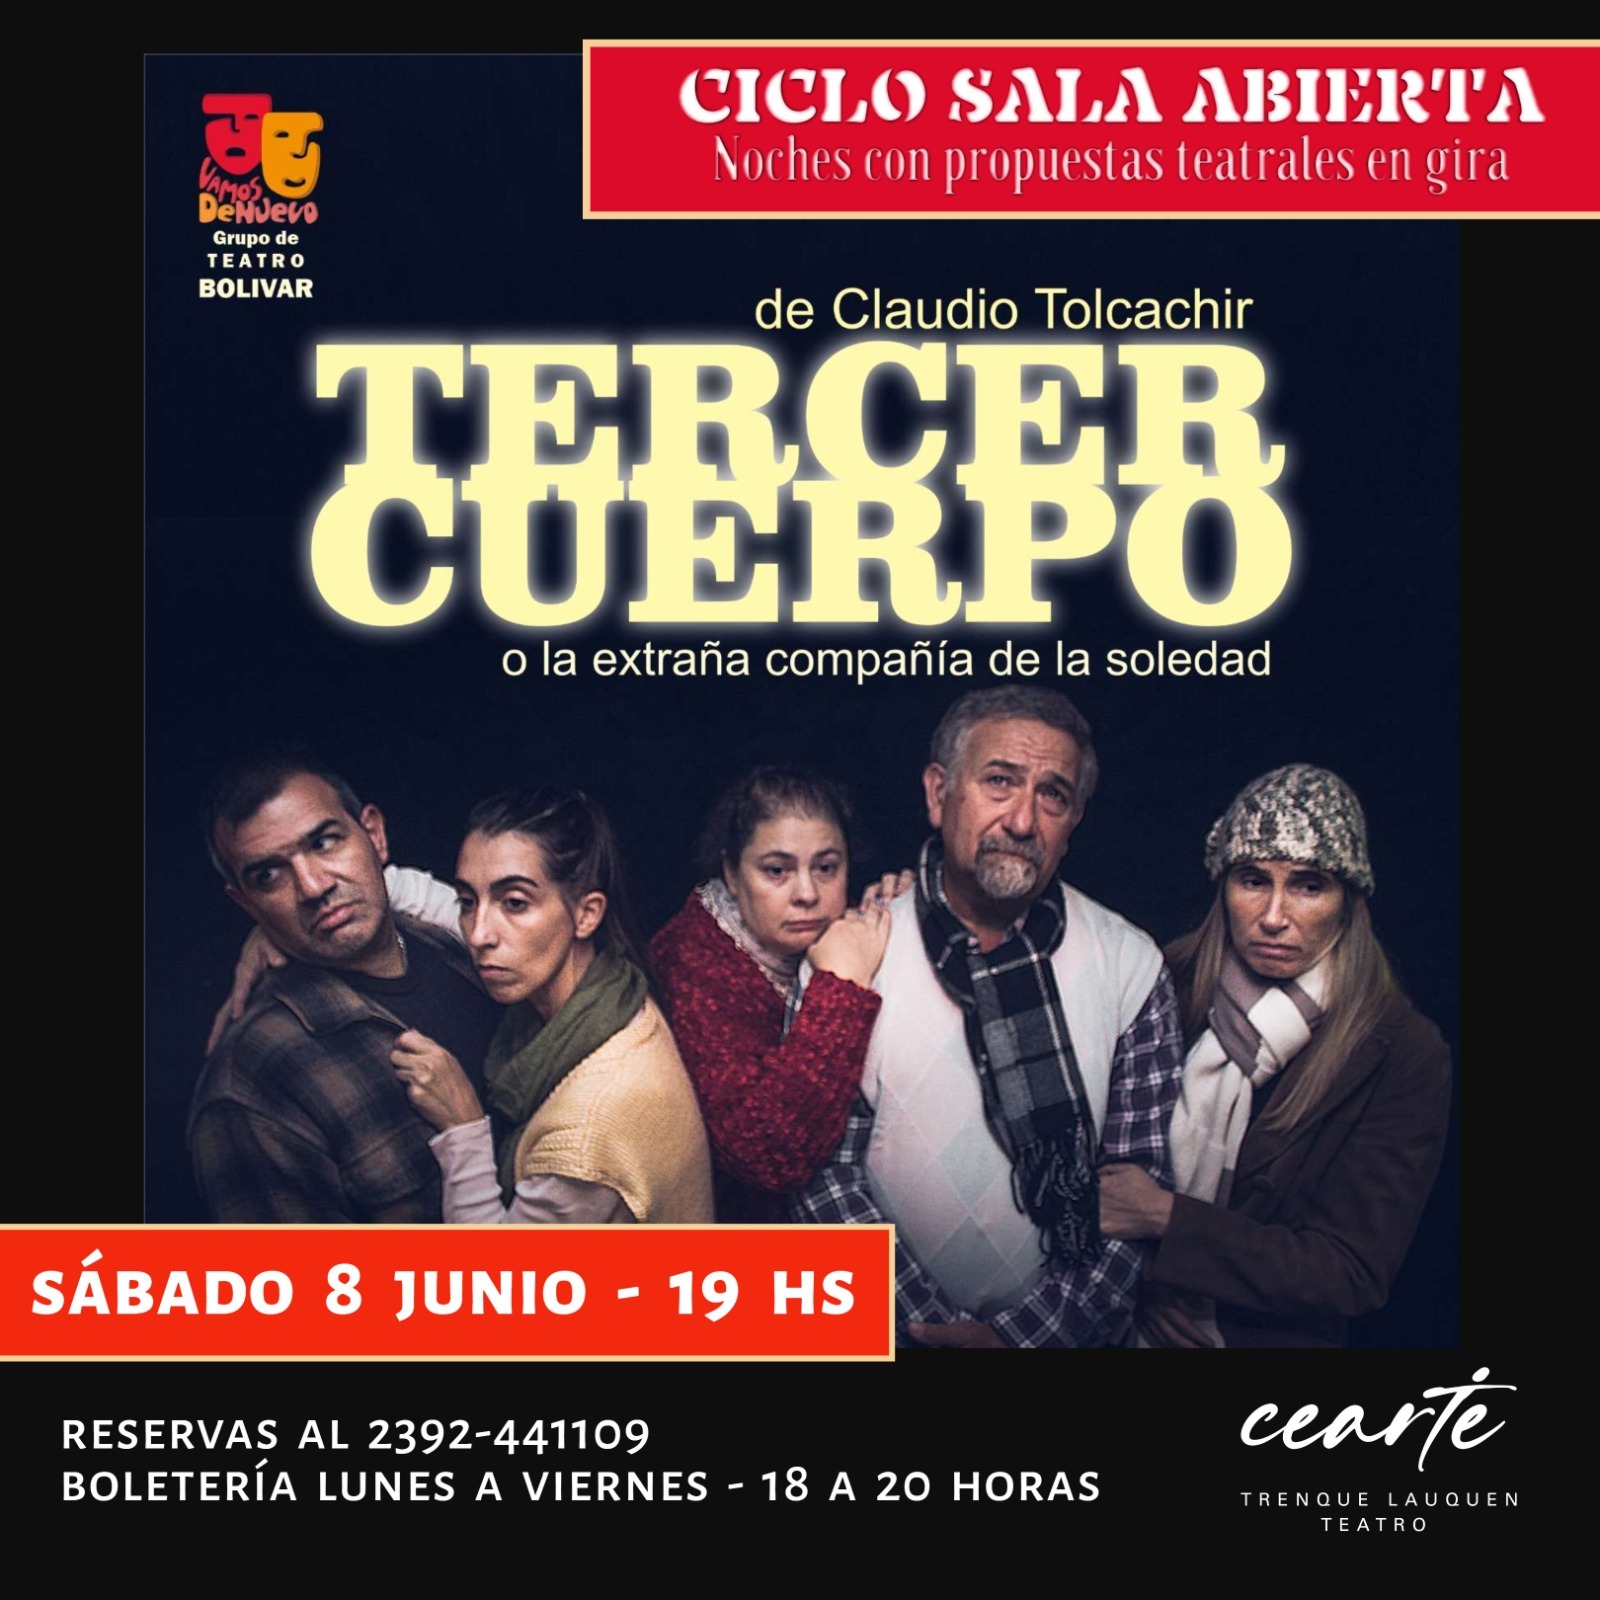 Teatro: ciclo Sala Abierta en el Cearte con invitados de Bolívar